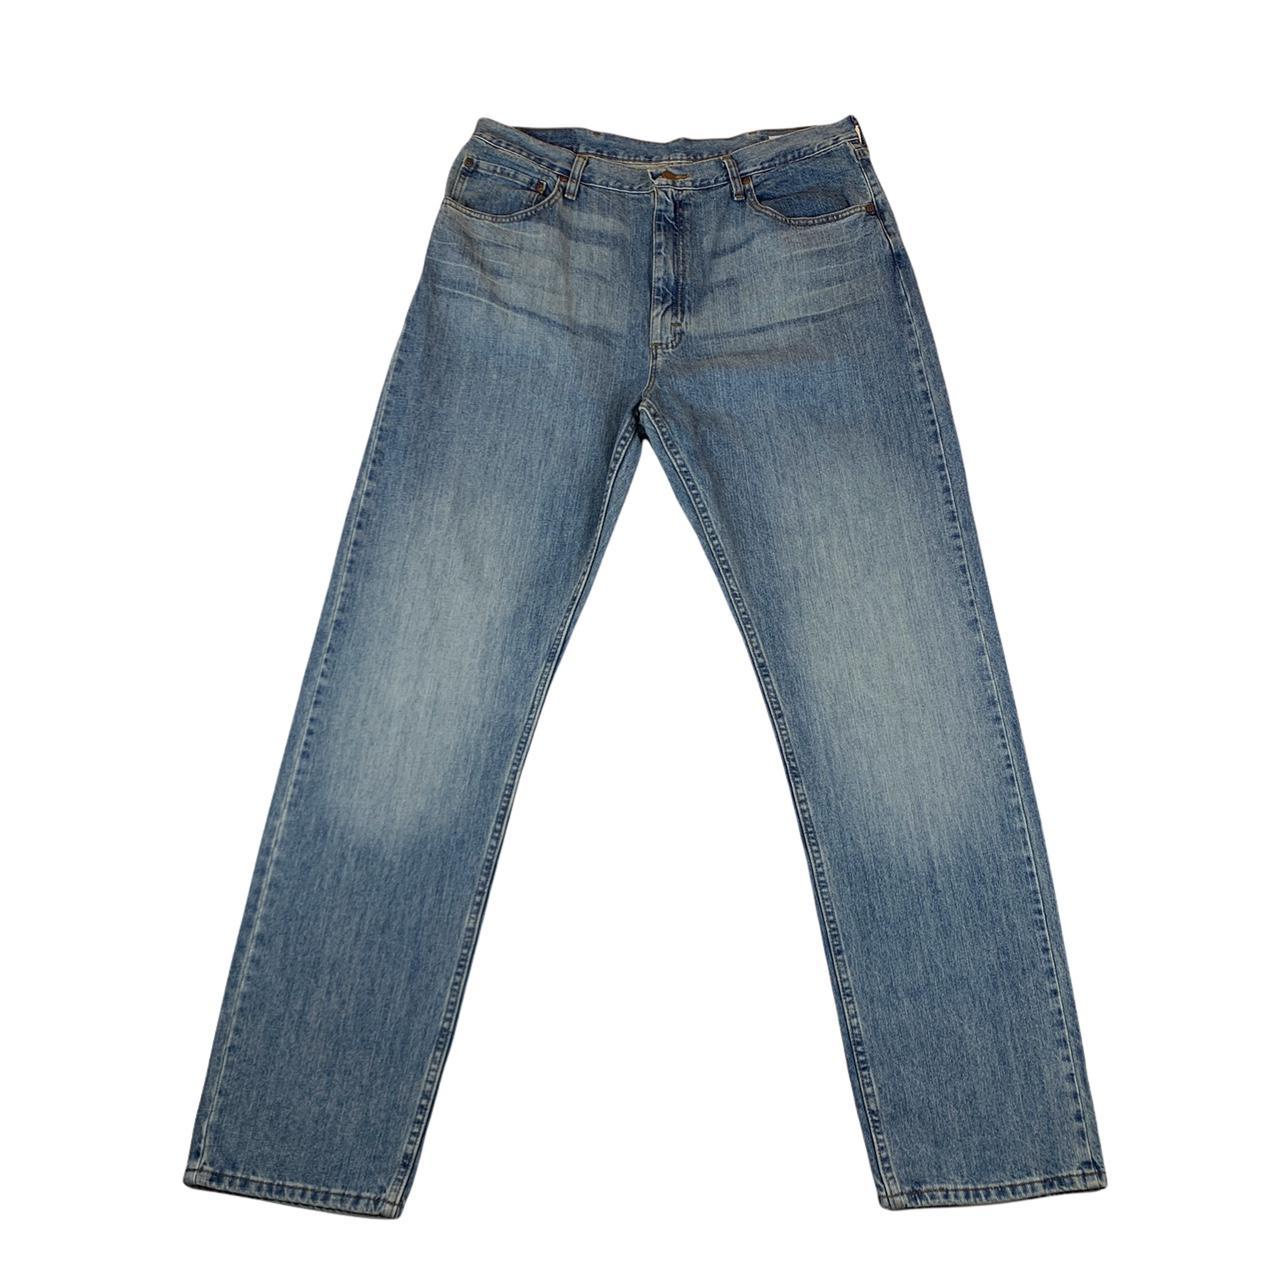 Vintage WRANGLER Mens Jeans Blue Denim Relaxed Fit... - Depop